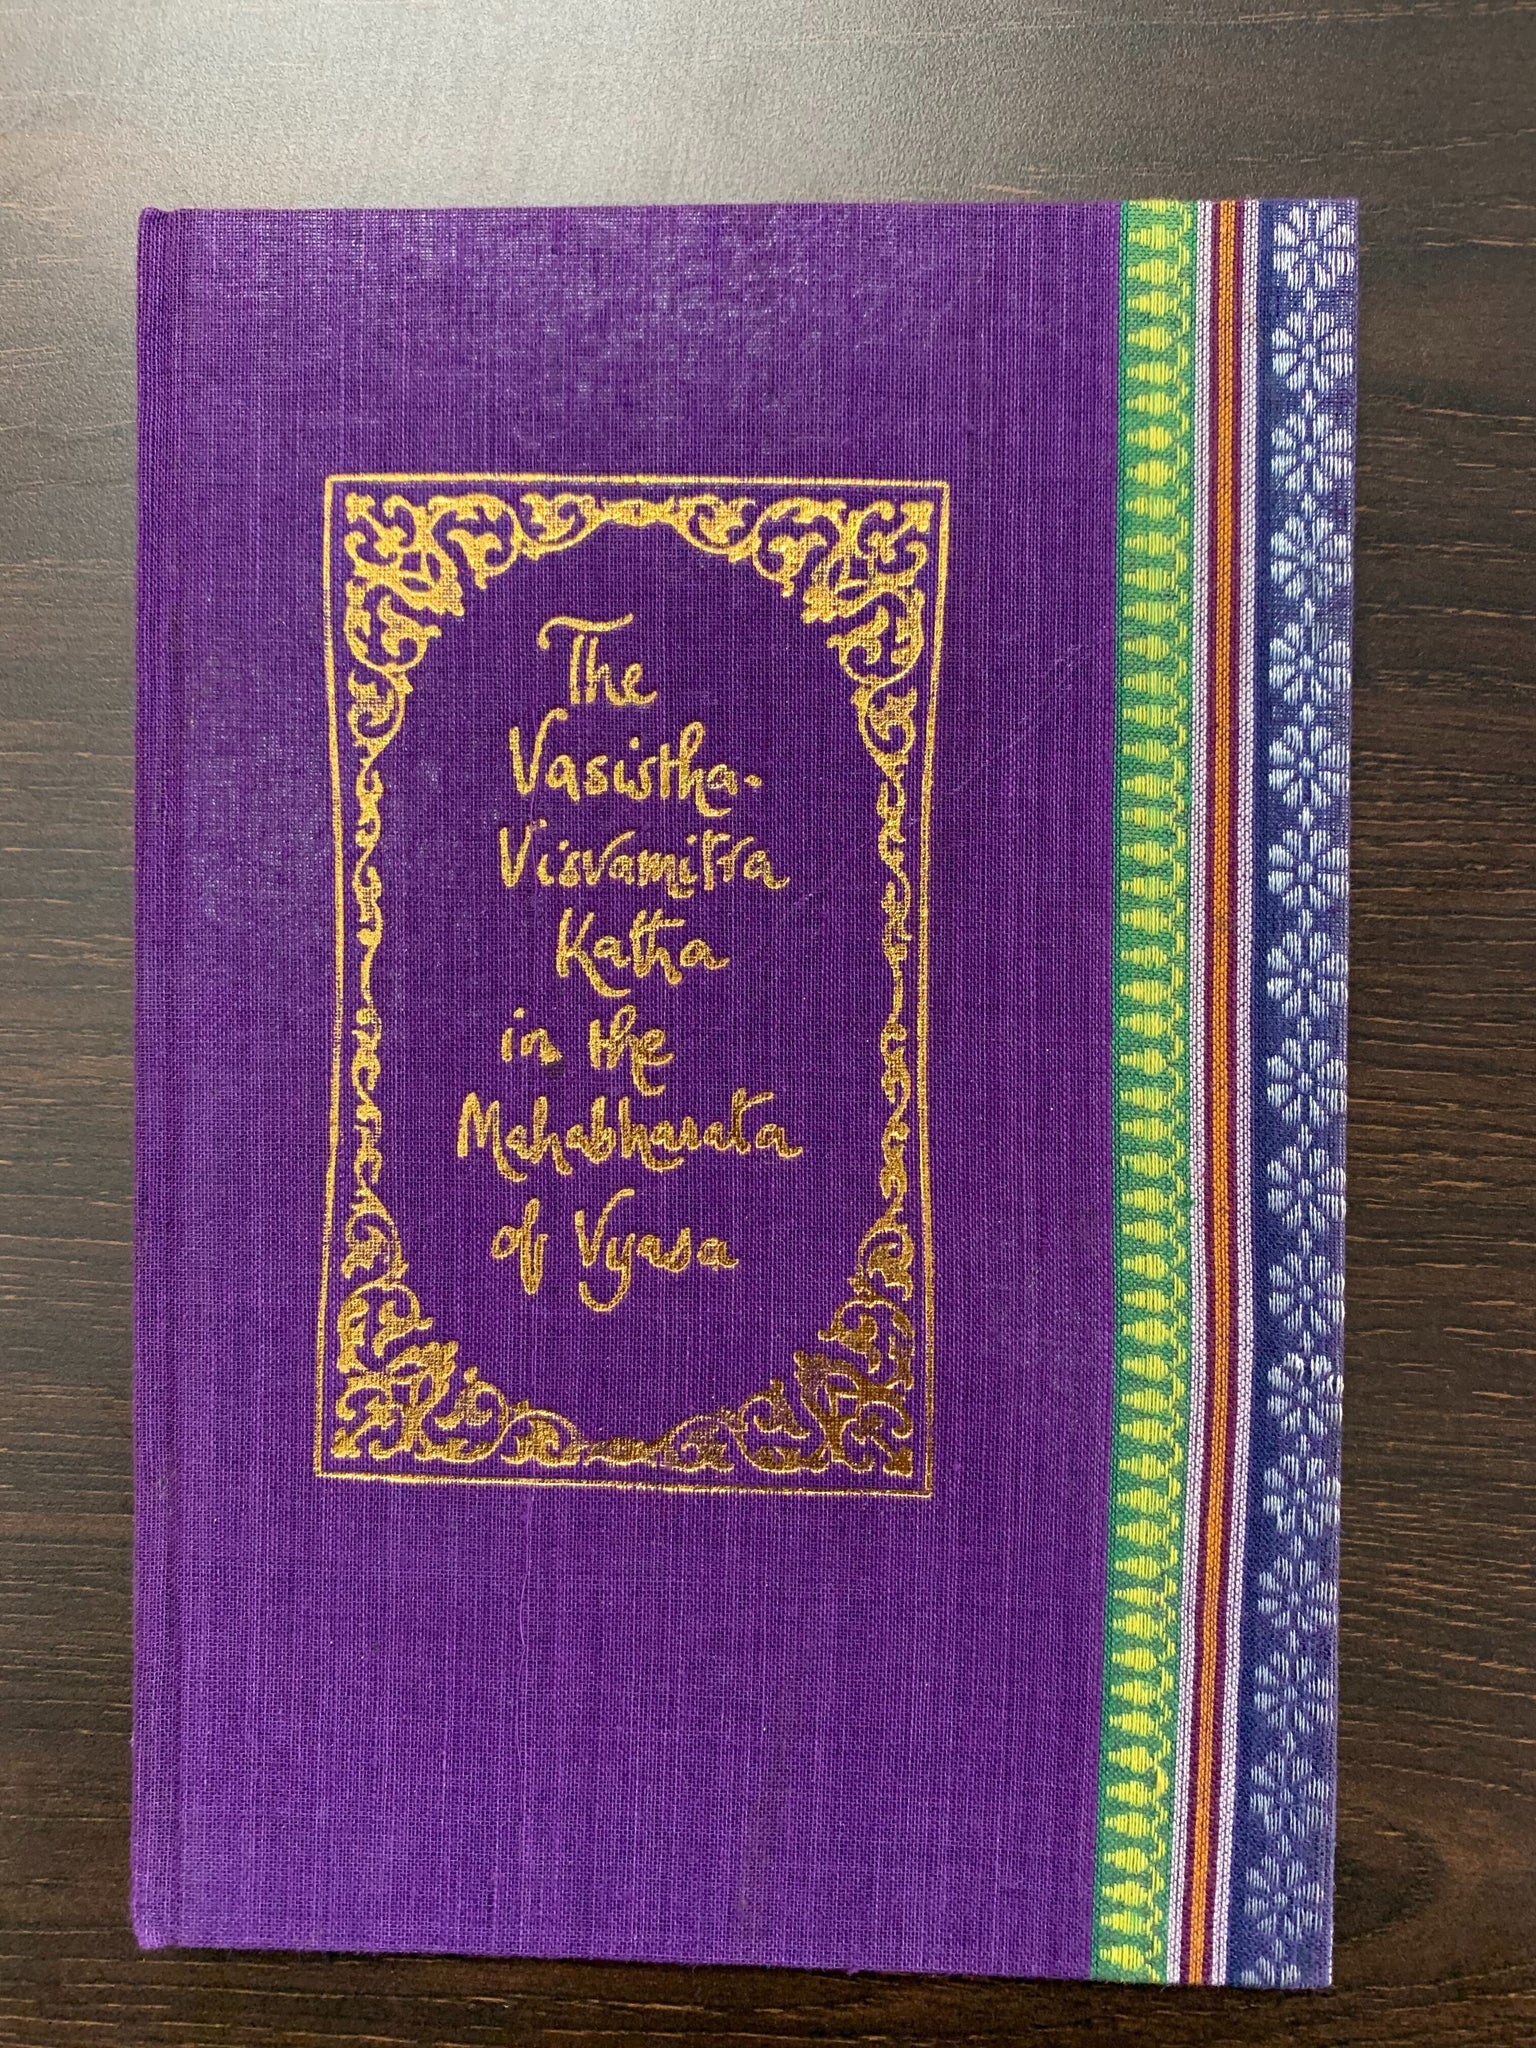 The Vasistha-Visvamitra Katha In The Mahabharata